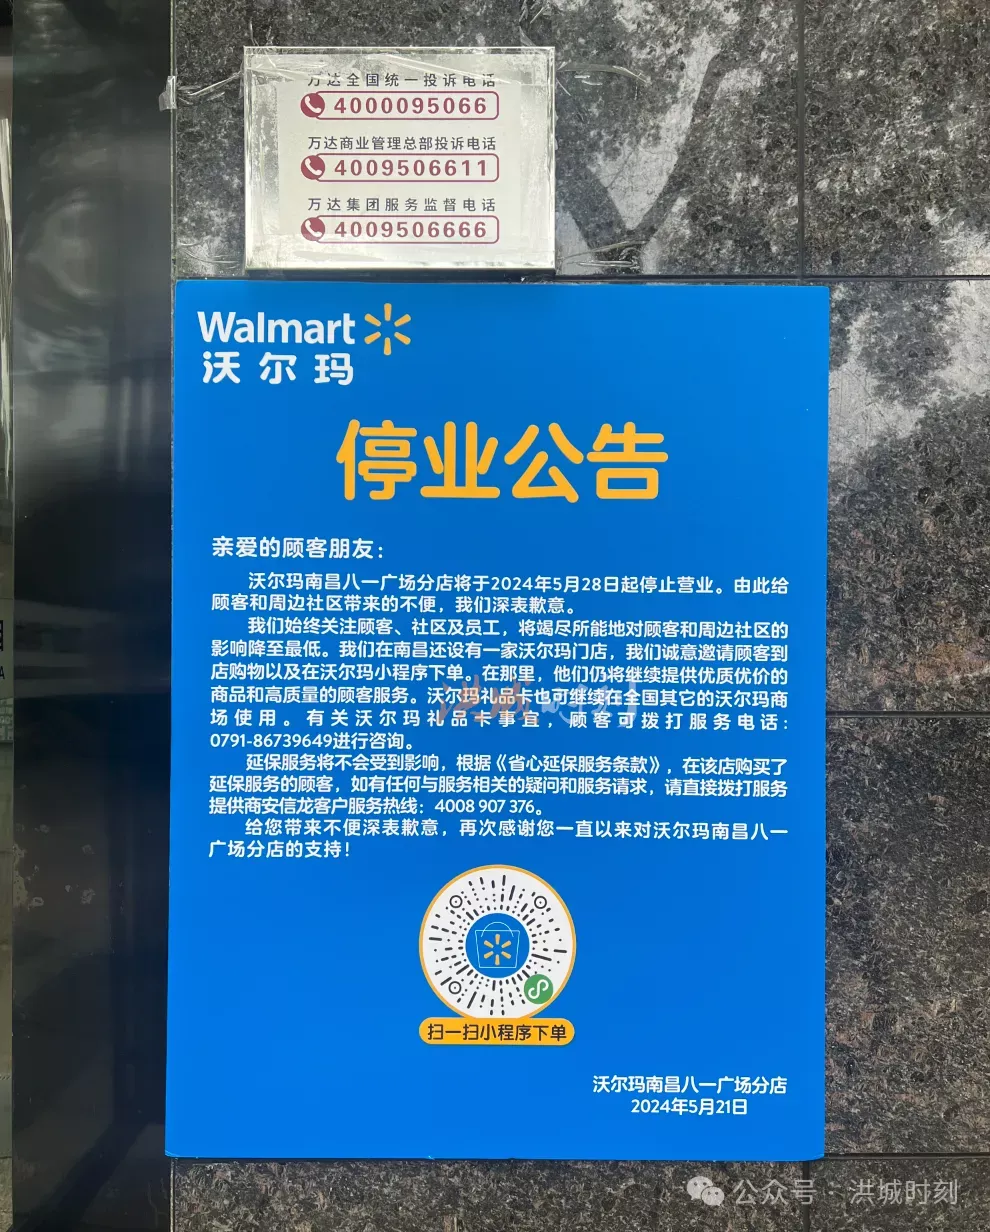 沃尔玛南昌八一广场分店正式发布停业公告！就在5月28日